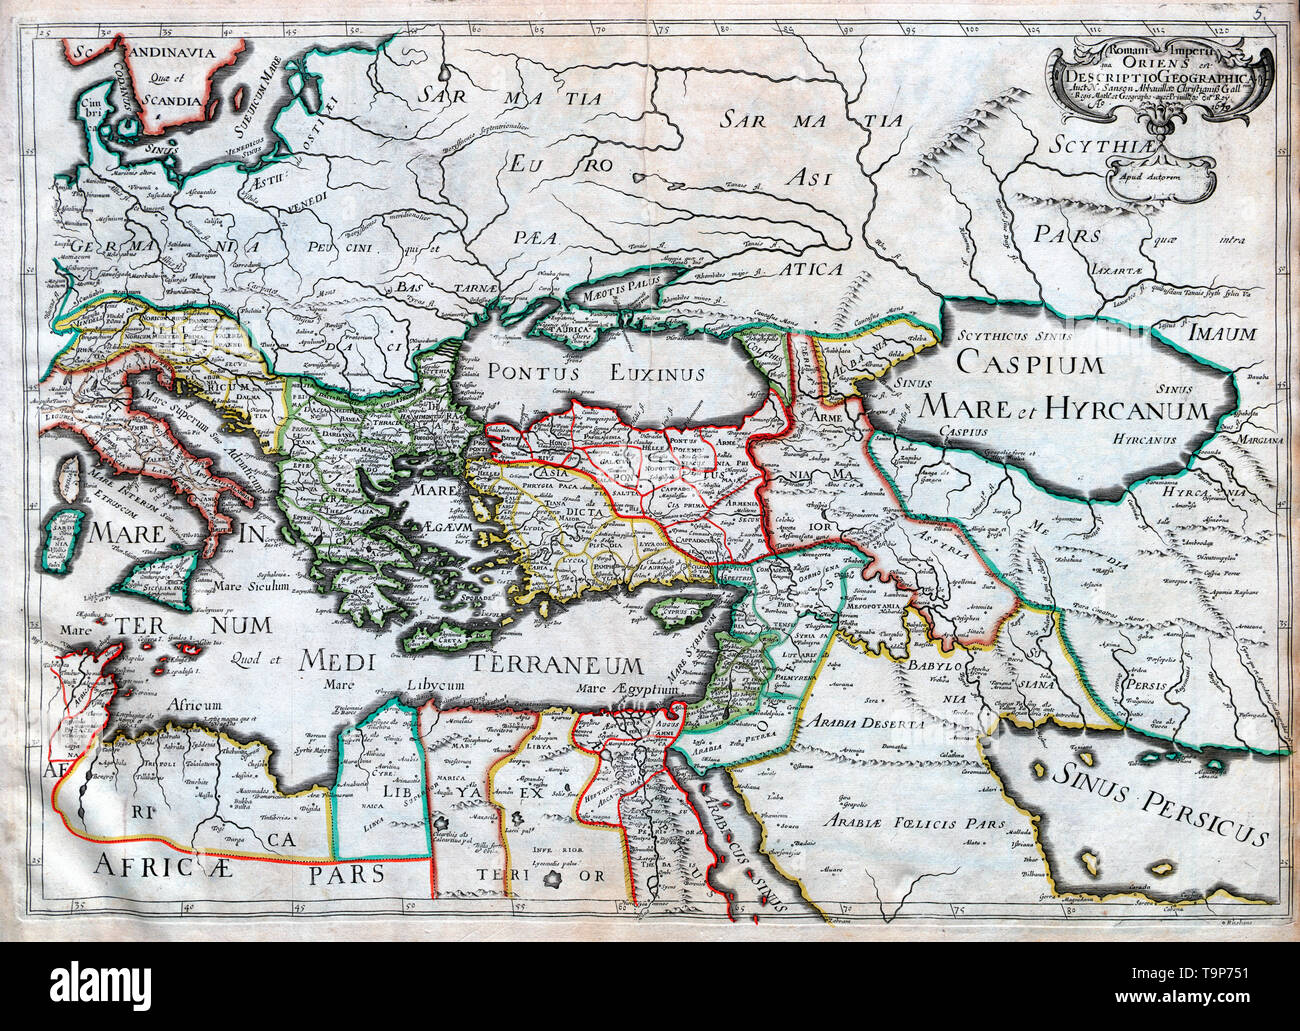 Romani Imperia Qua Oriens - Karte des östlichen römischen Reiches - Sanson Atlas, um 1700 Stockfoto